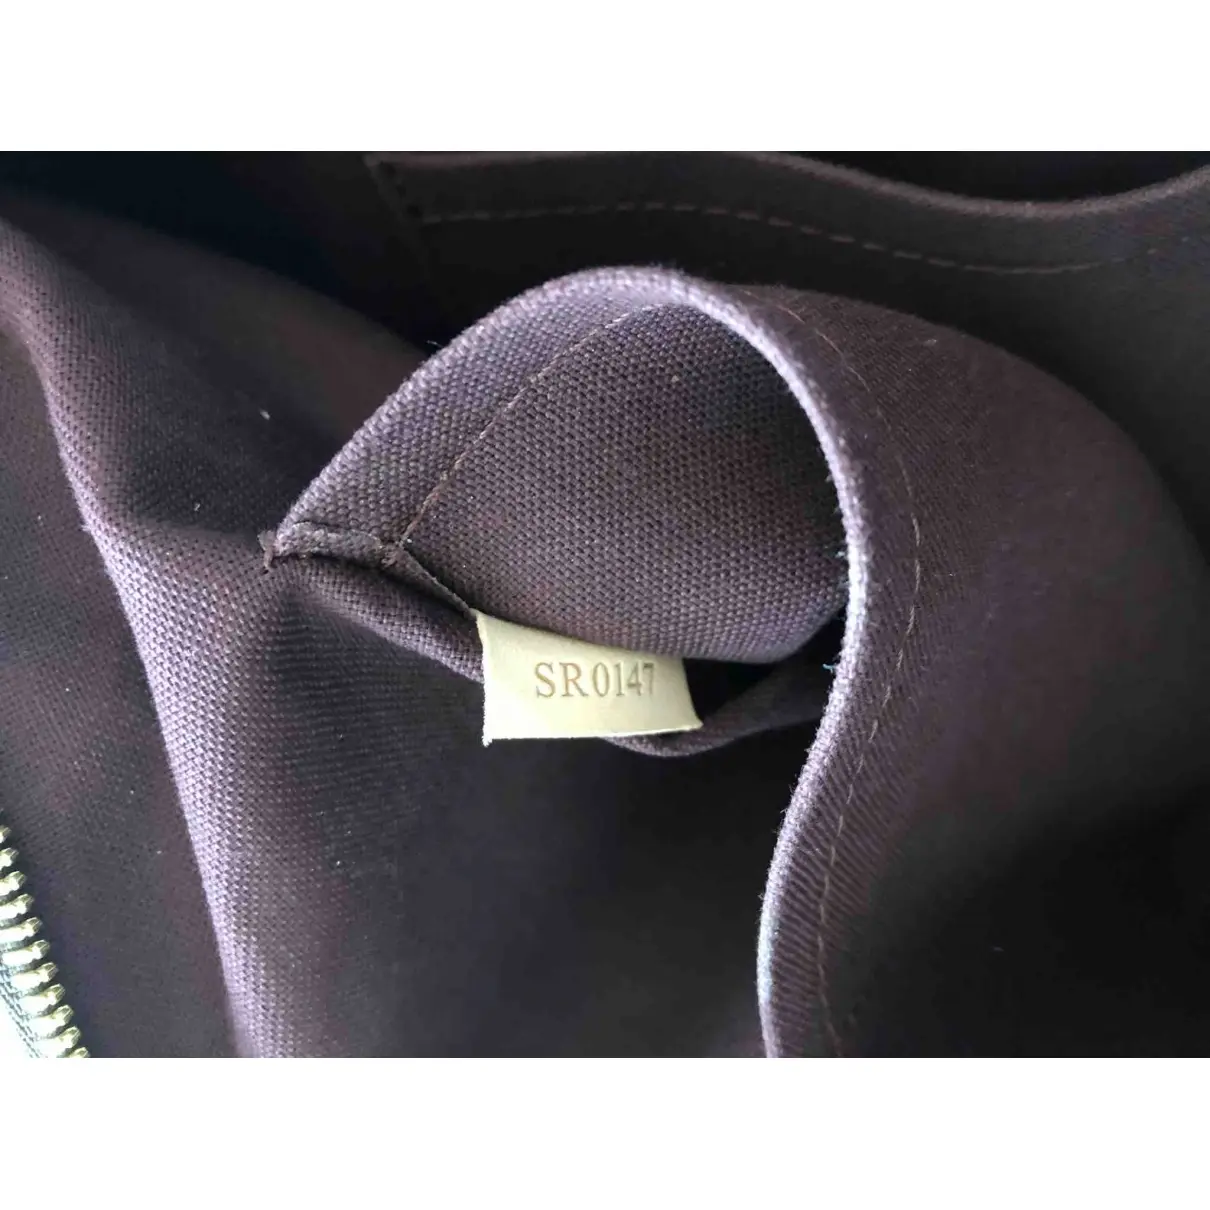 Turenne cloth handbag Louis Vuitton